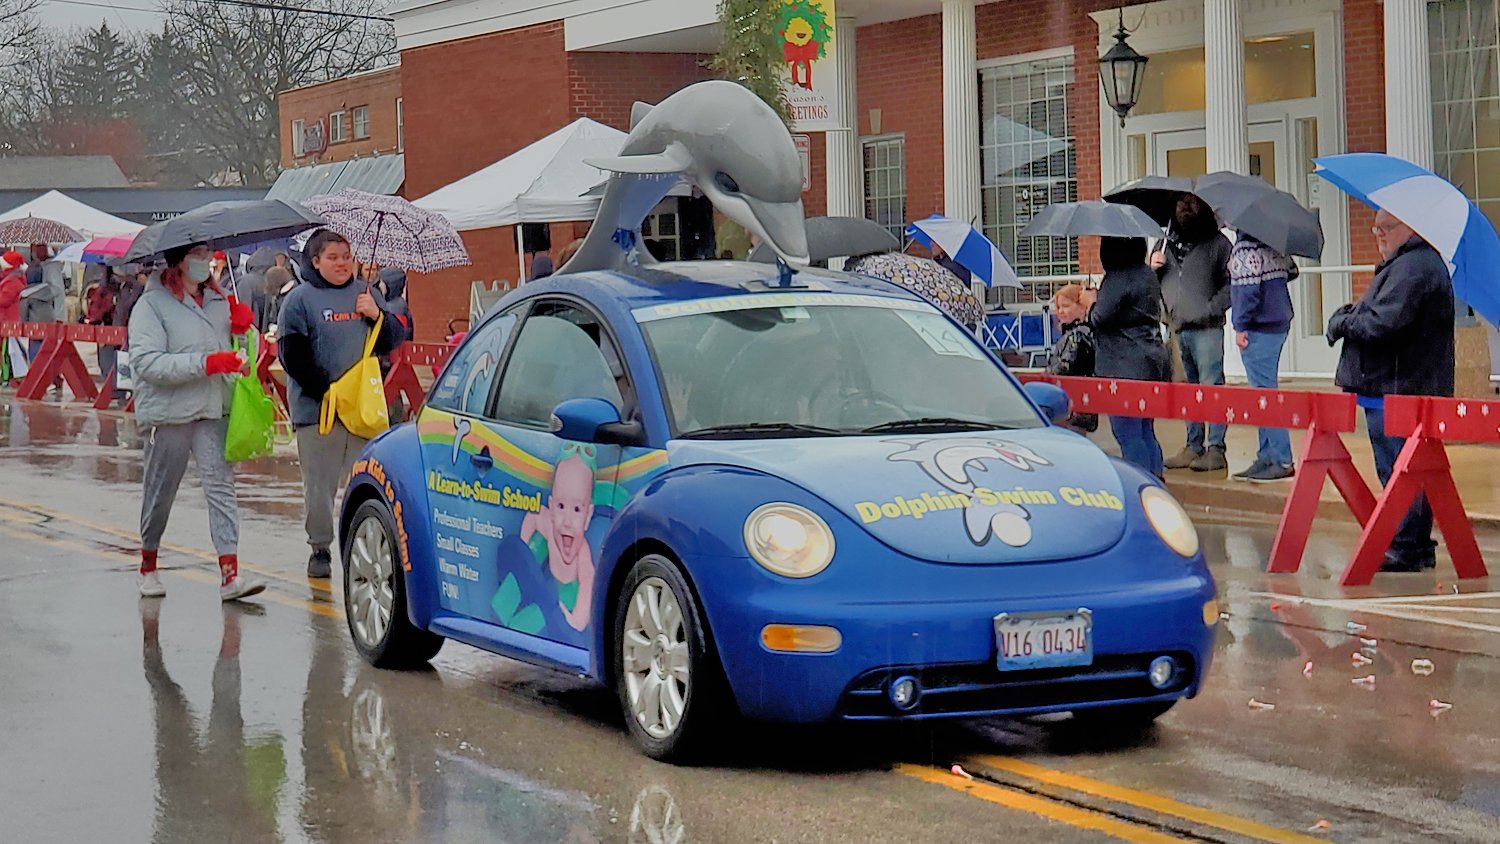 Dolphin Swim Club car.